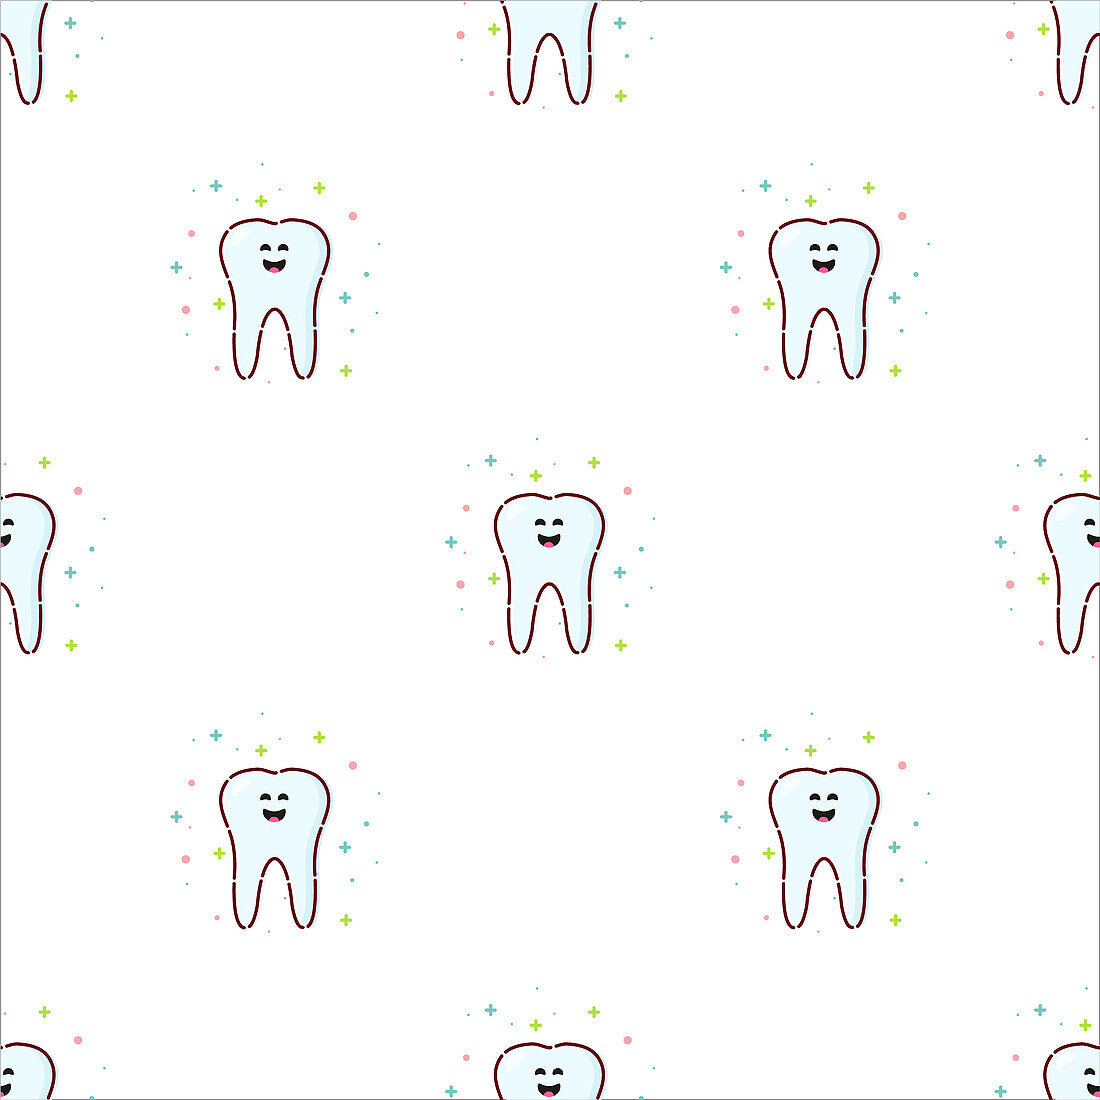 Healthy teeth, conceptual illustration